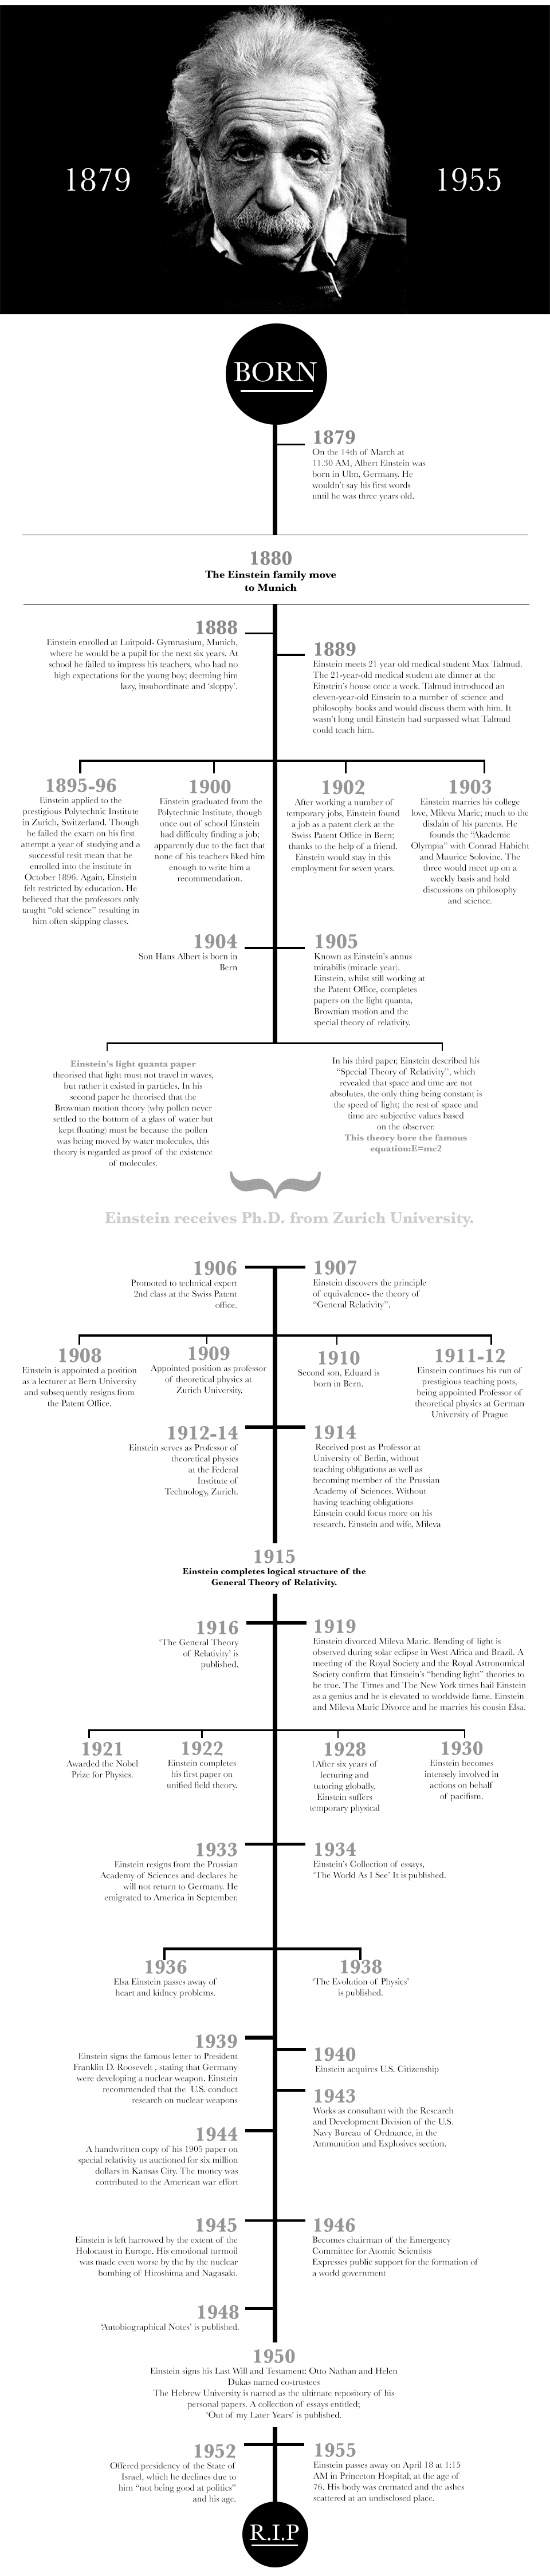 Albert Einsteins Timeline